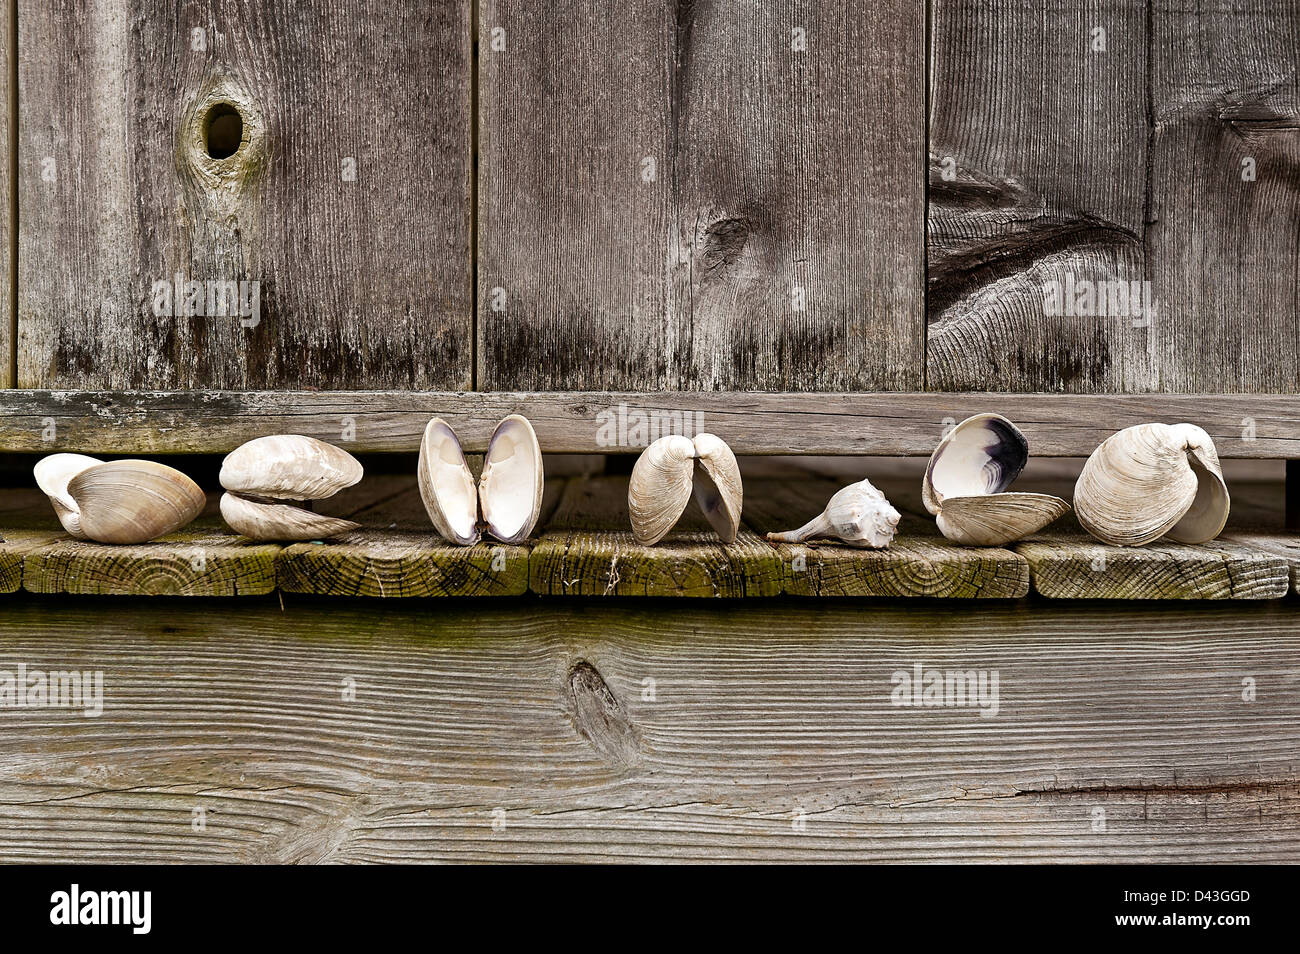 Muscheln aufgereiht durch eine rustikale Dusche im Freien. Stockfoto